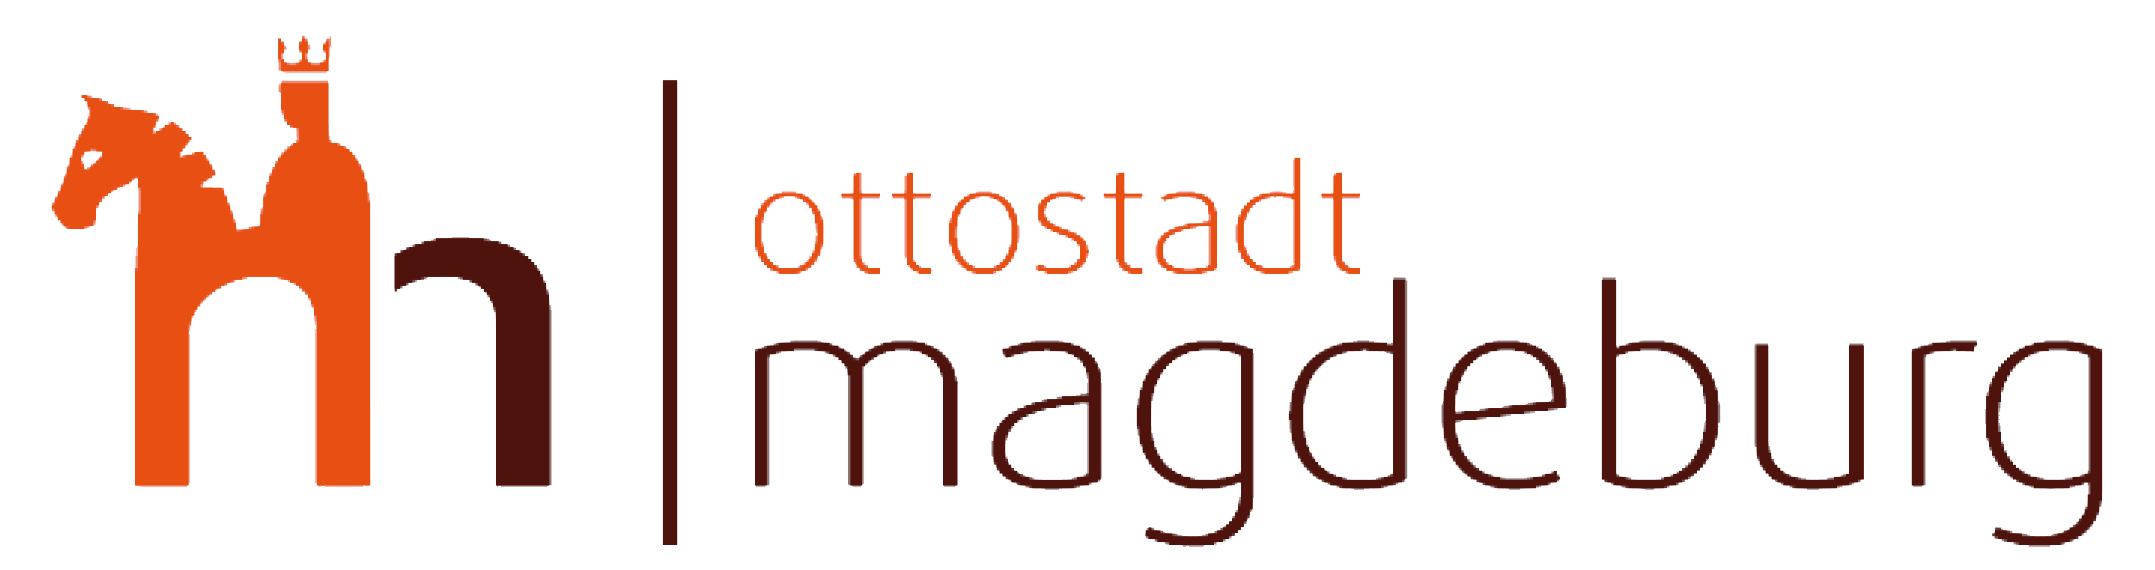 Abtshof Magdeburg Auszeichnung Ottostadt Magdeburg